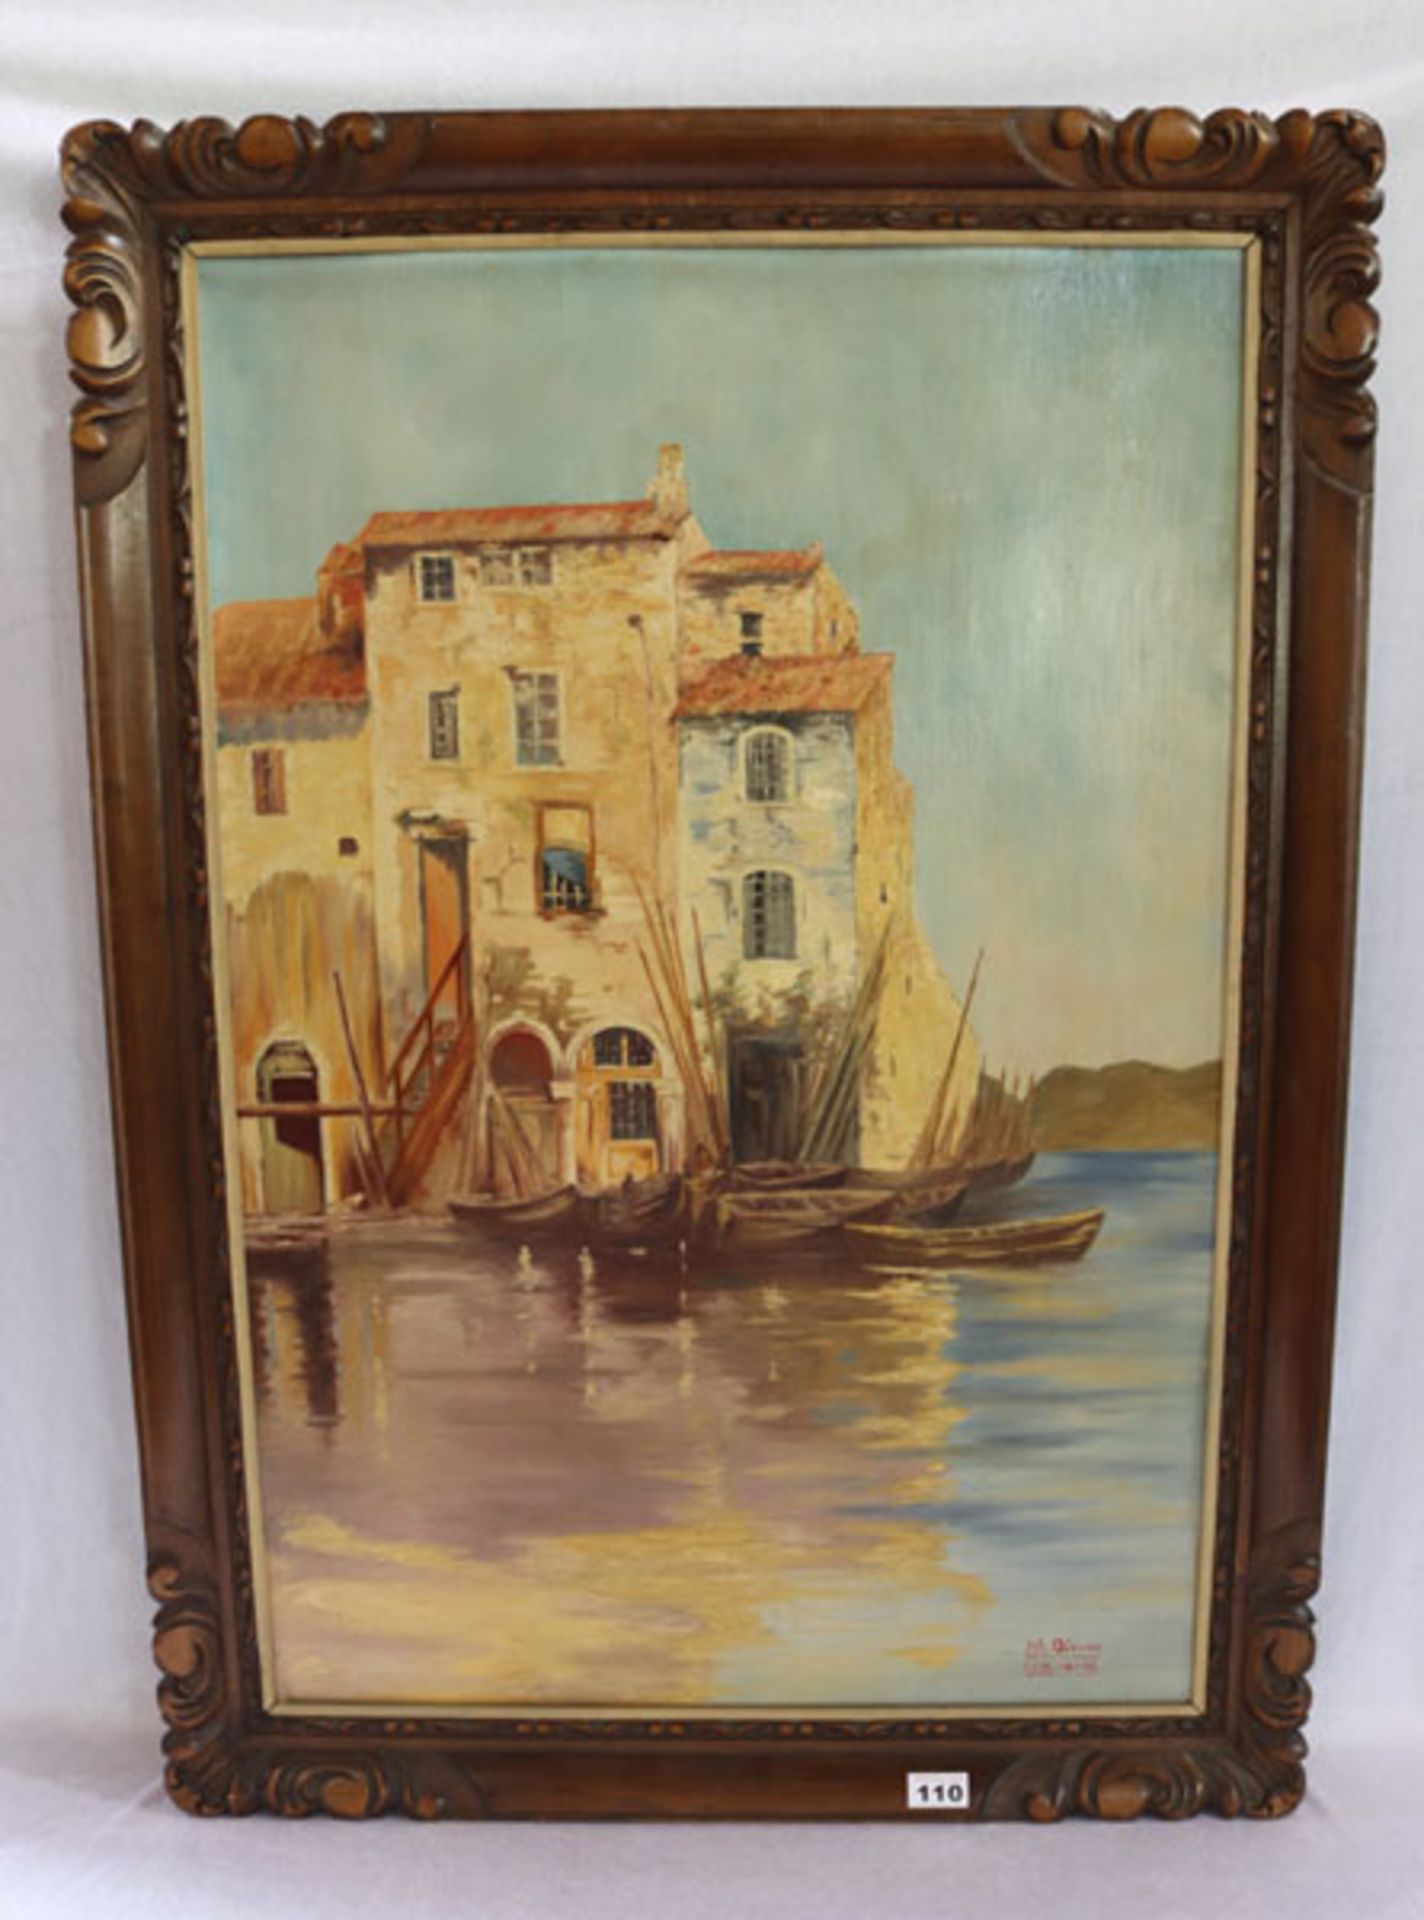 Gemälde ÖL/Holz 'Haus mit Booten am See', signiert M. Odeurs, LE 19.10.26, Holz gesprungen, gerahmt,